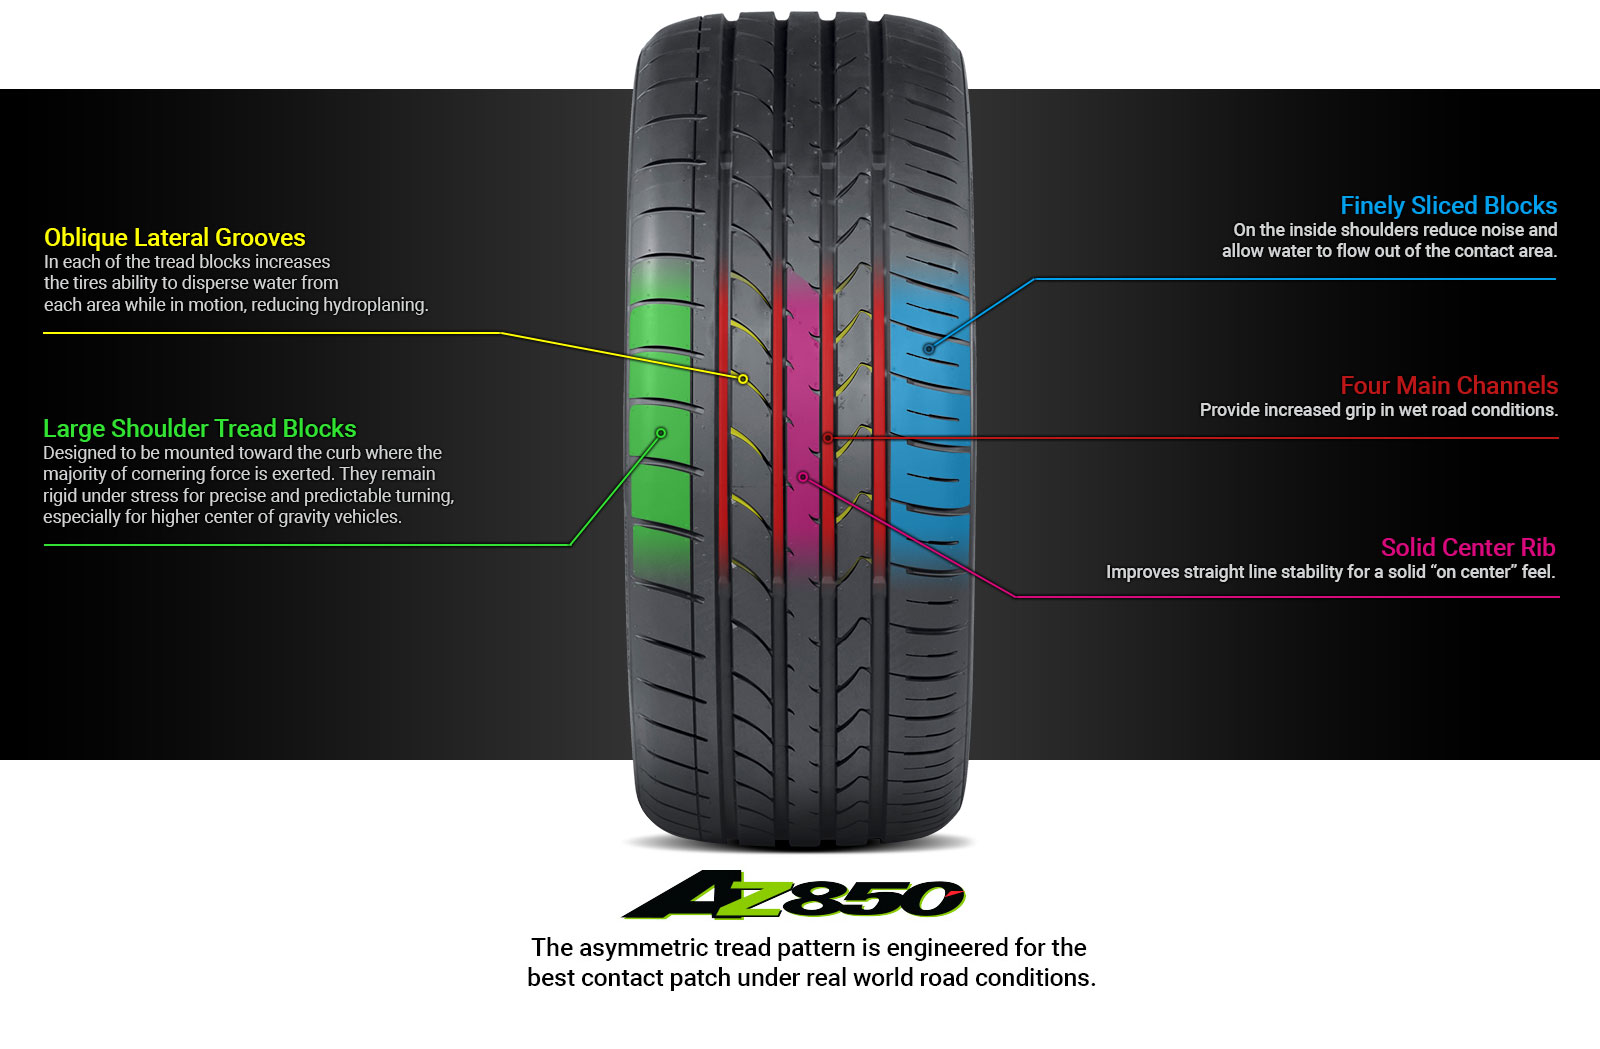 AZ850 Tire Technology